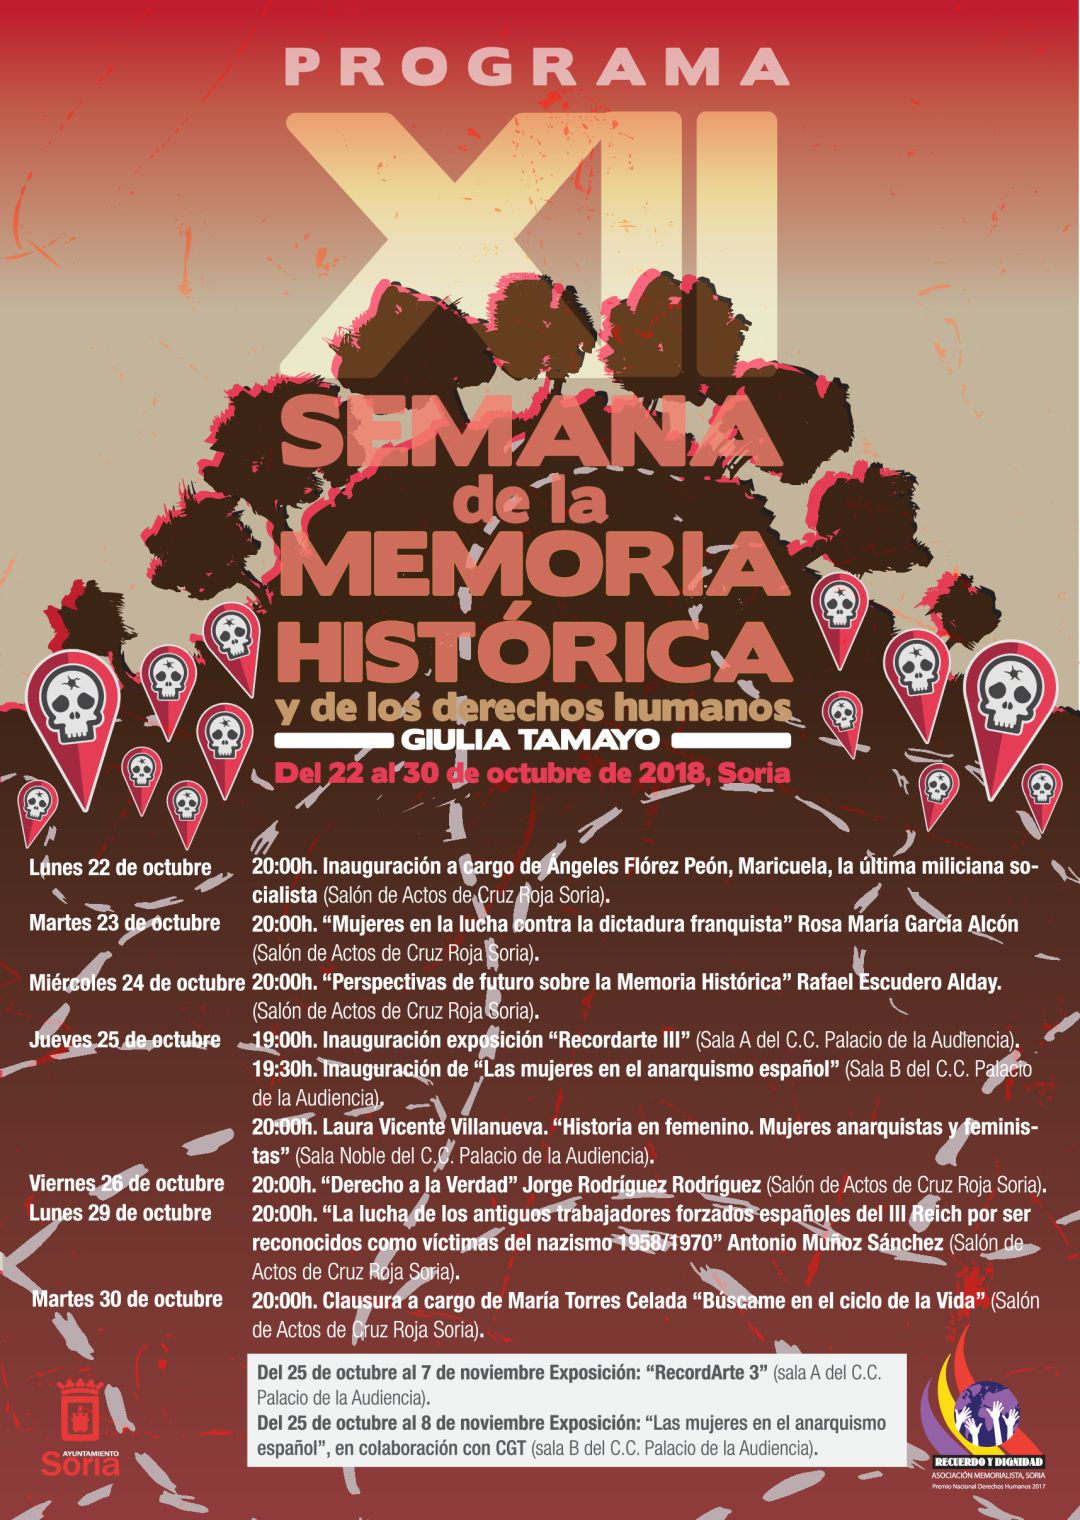 Llega la XII Semana de la Memoria Histórica y los Derechos Humanos Giulia Tamayo